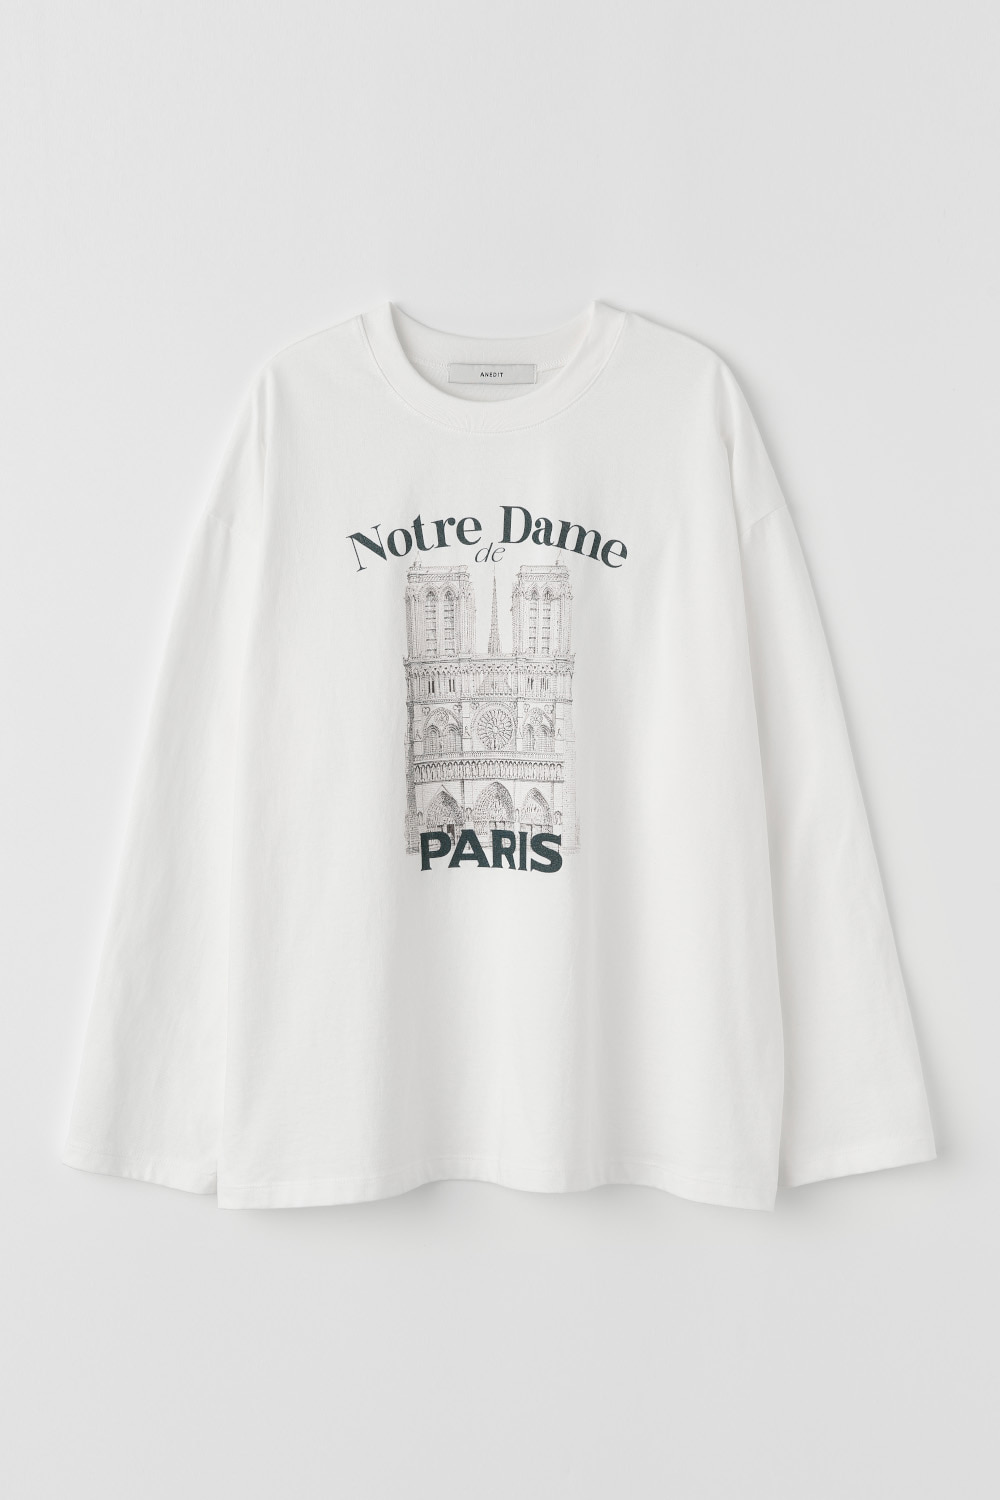 [3/15예약배송]Notre Dame Long Sleeve Tshirt_White